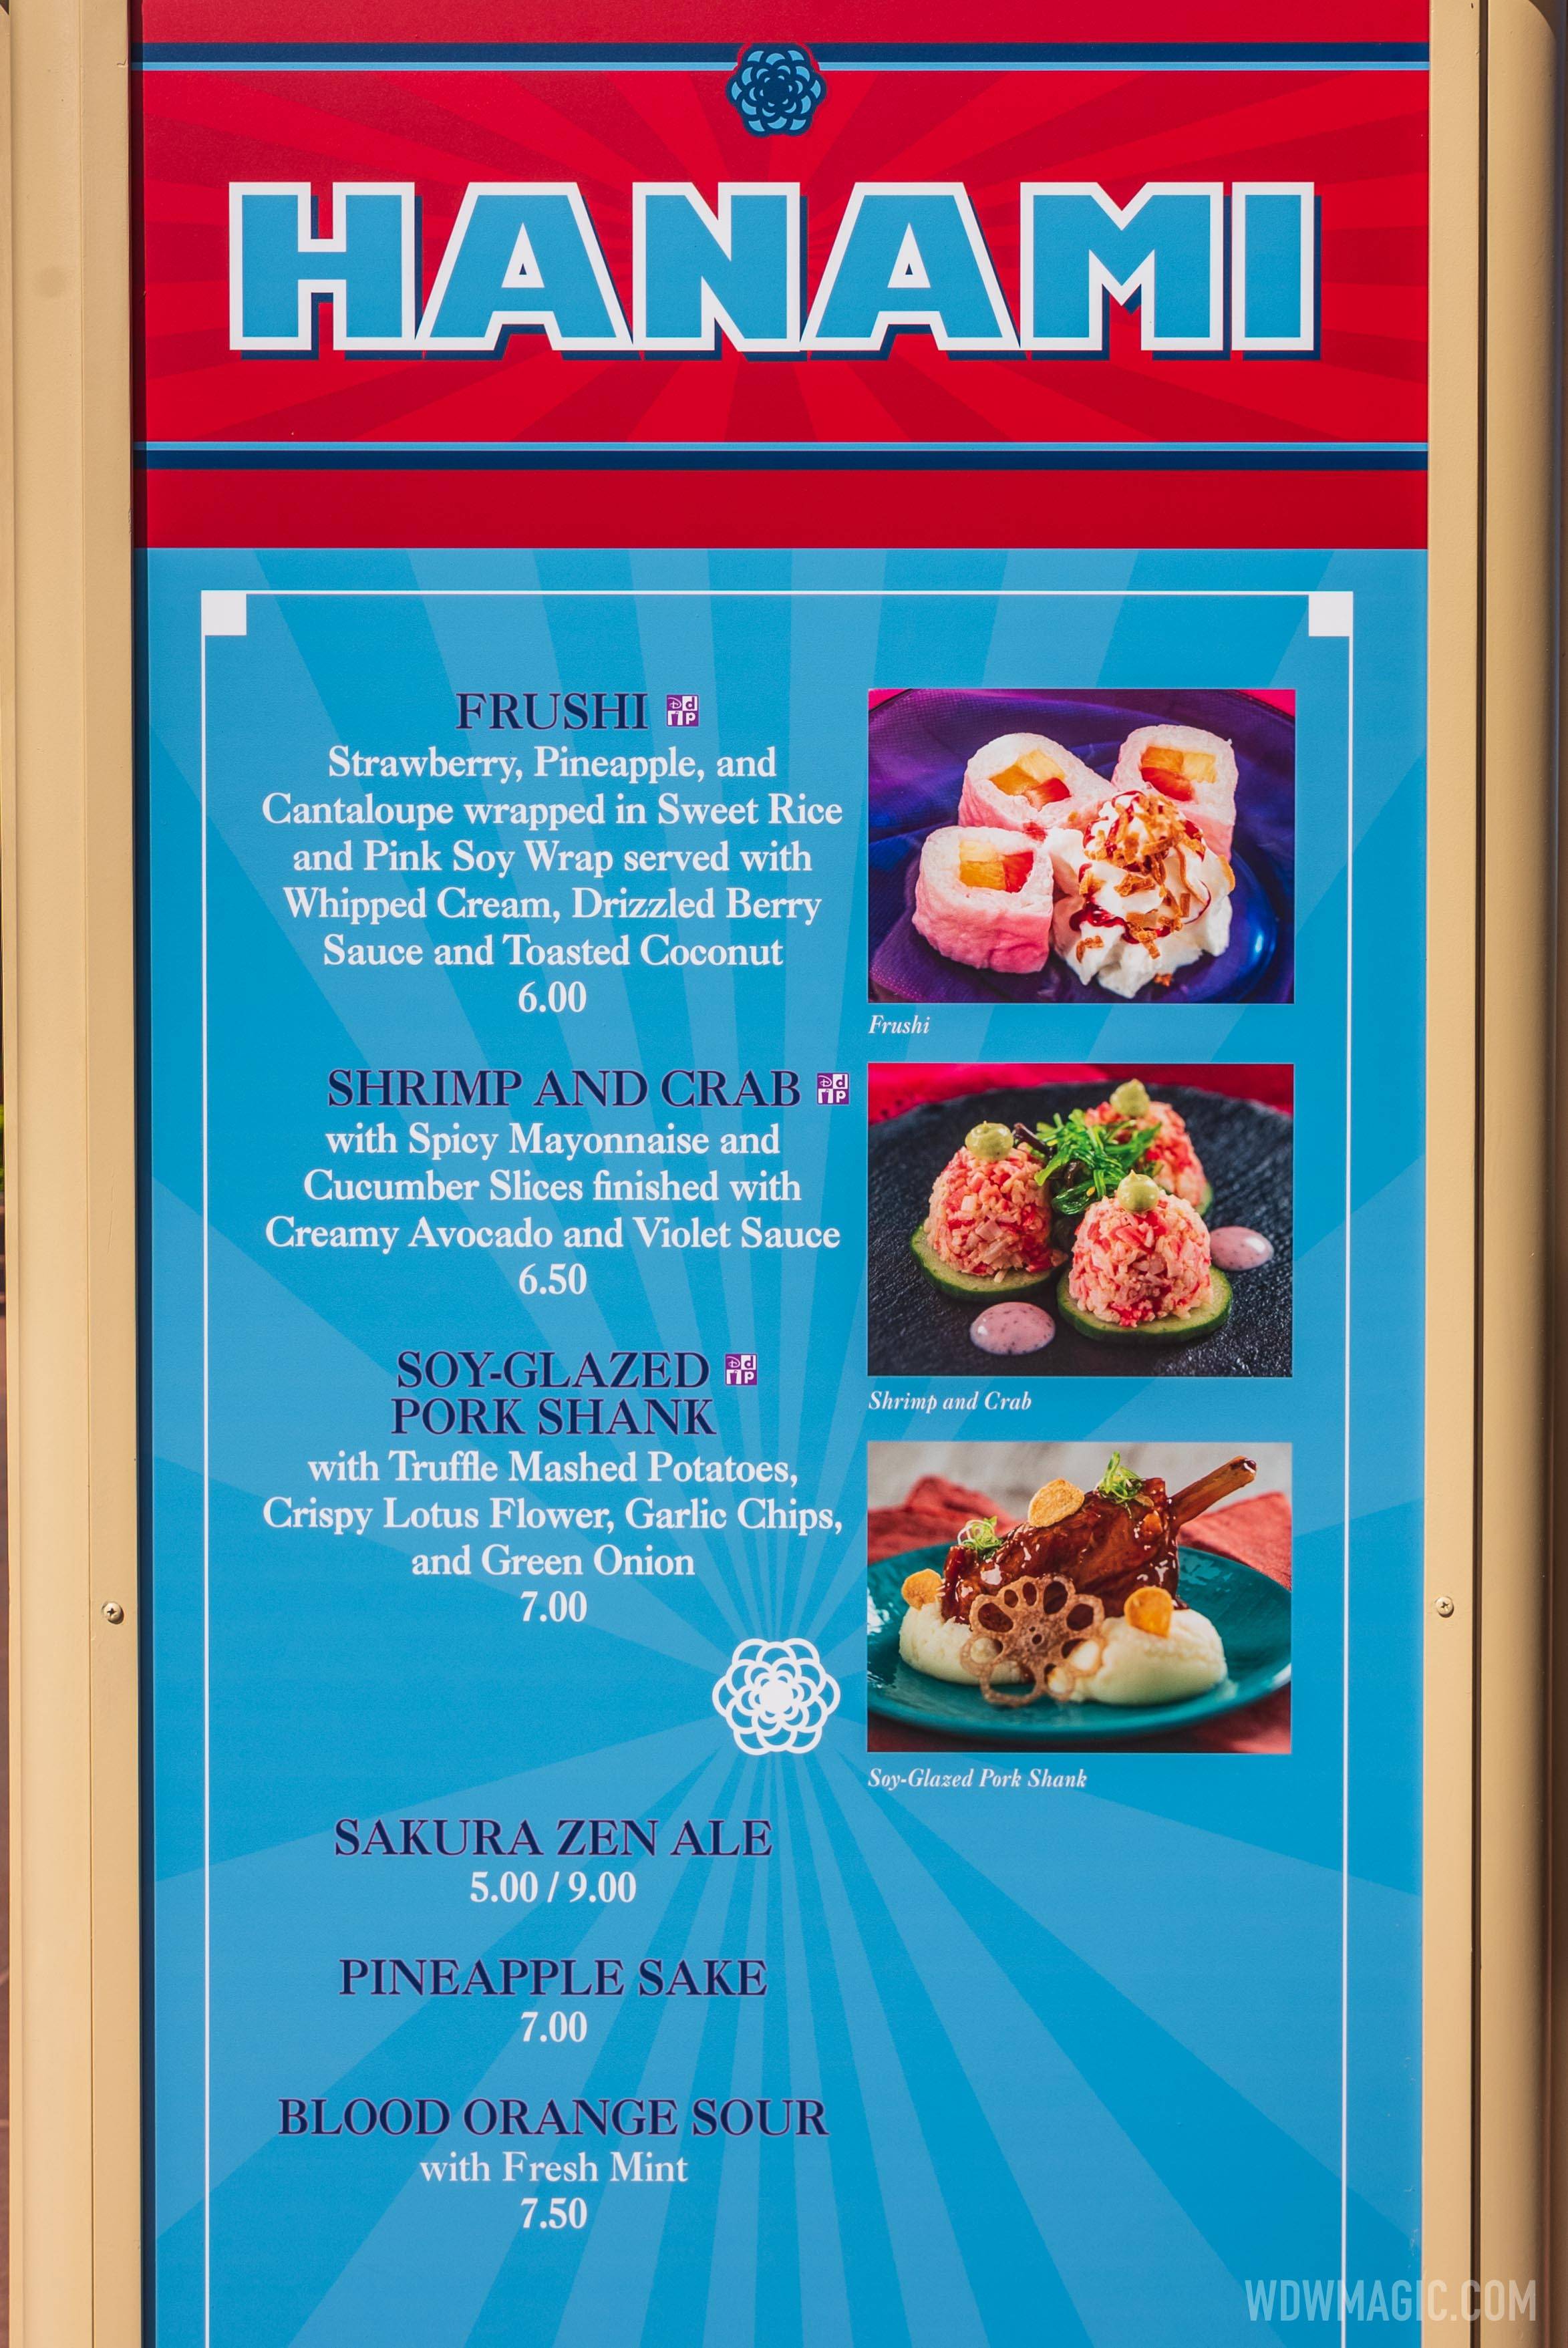 Hanami kiosk menu